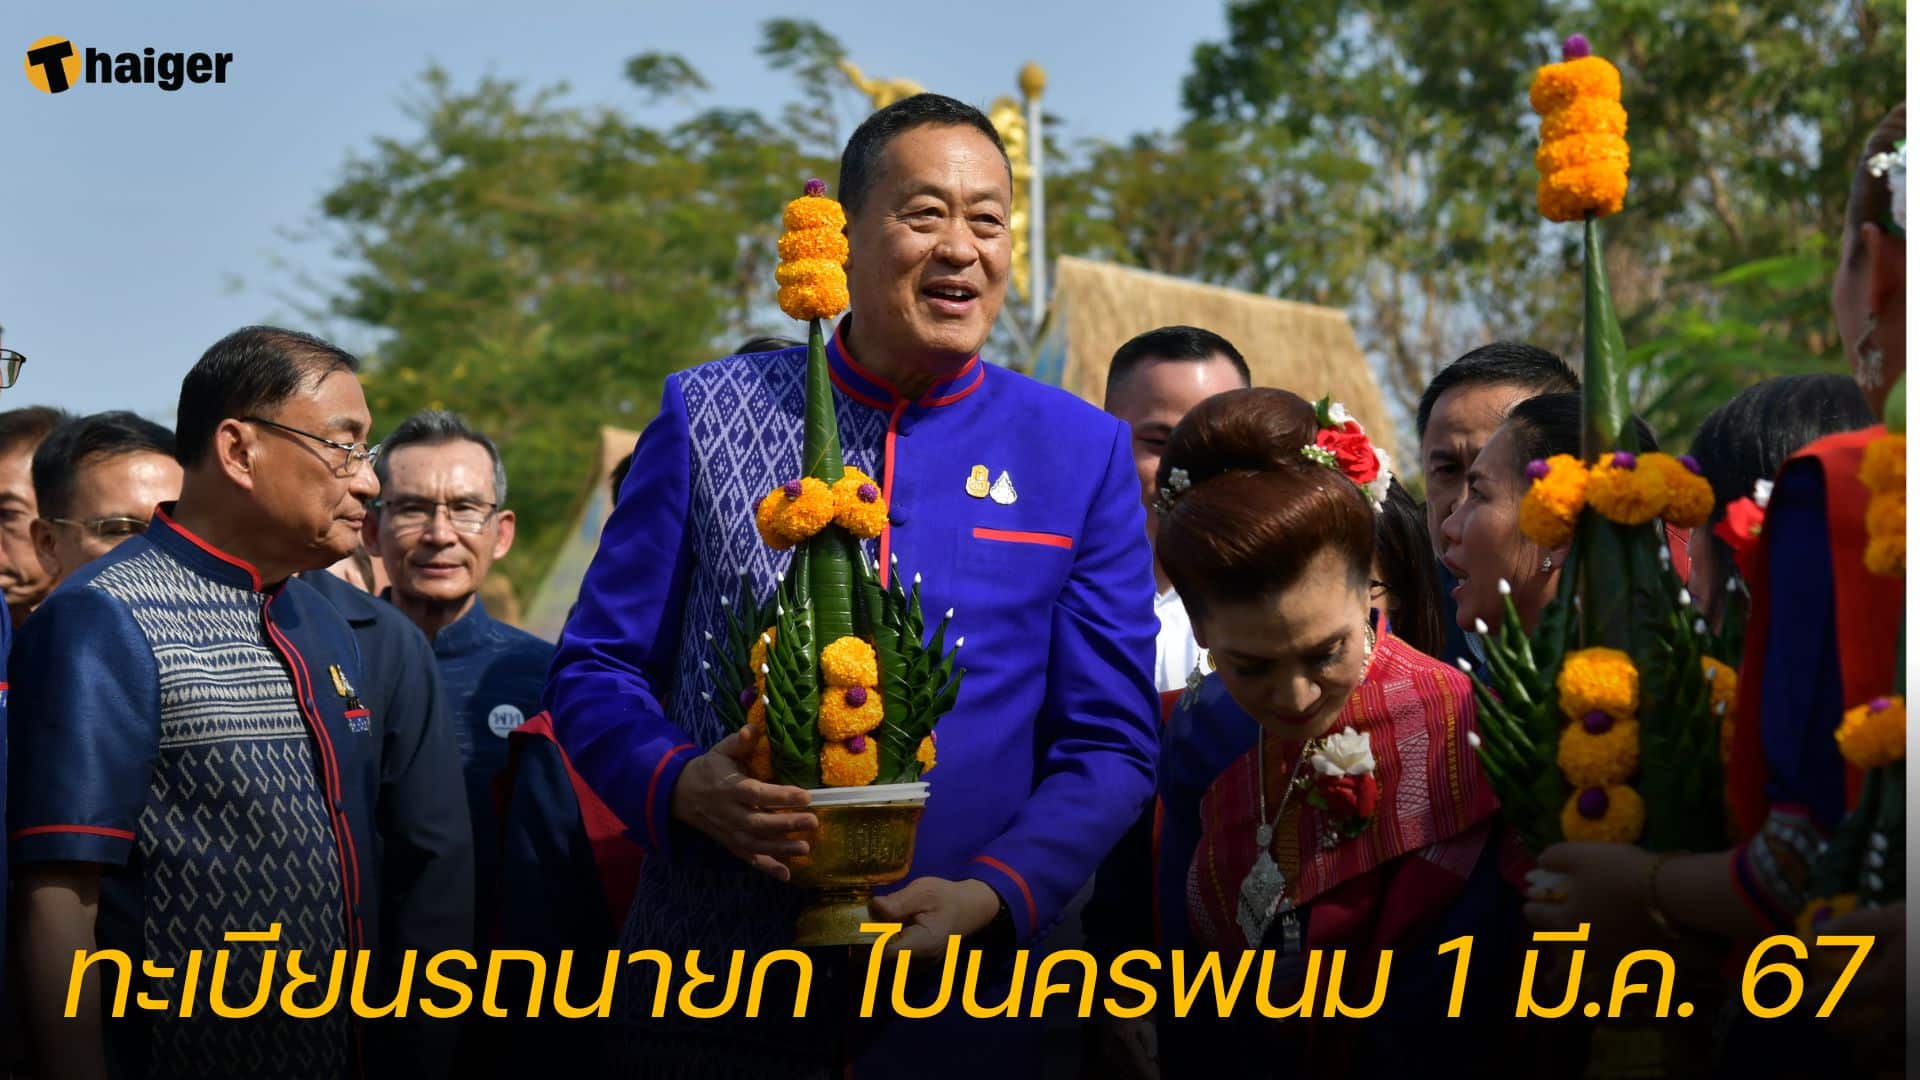 เลขเด็ด ทะเบียนรถนายก นมัสการองค์พระธาตุพนม 1 มี.ค. 67 | Thaiger ข่าวไทย